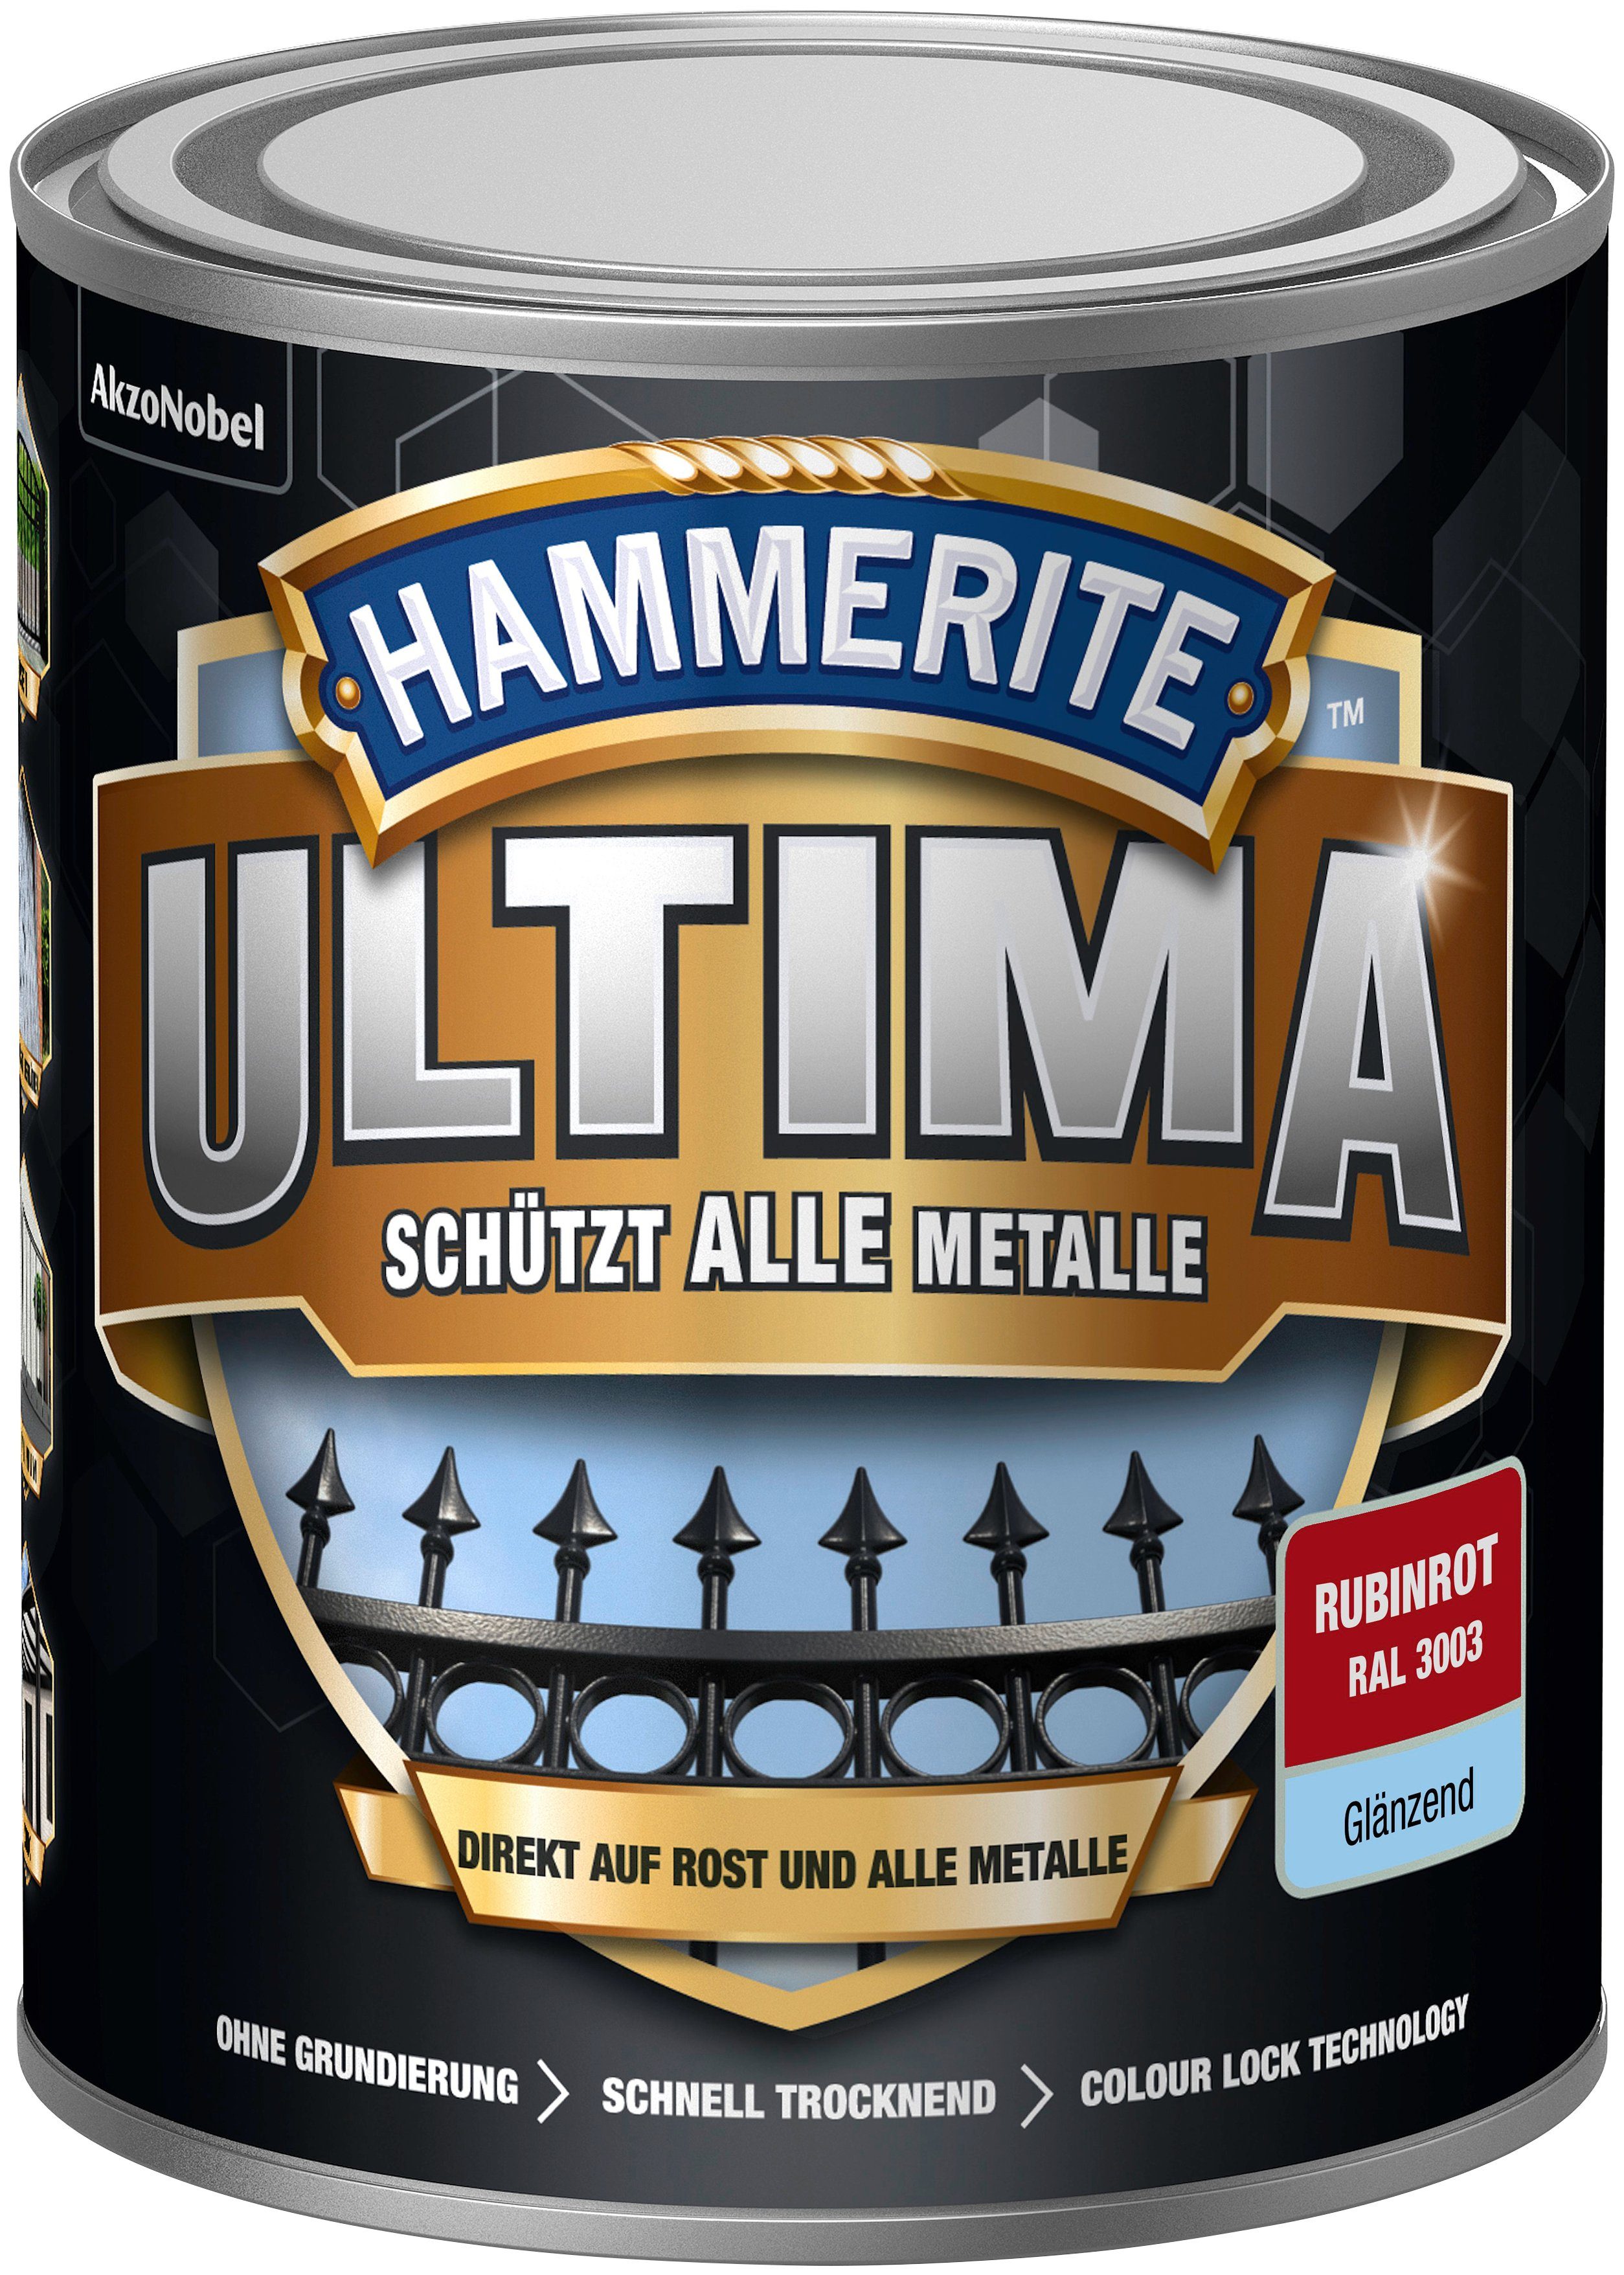 Hammerite  Metallschutzlack ULTIMA schützt alle Metalle, 3in1, rubinrot RAL 3003, glänzend